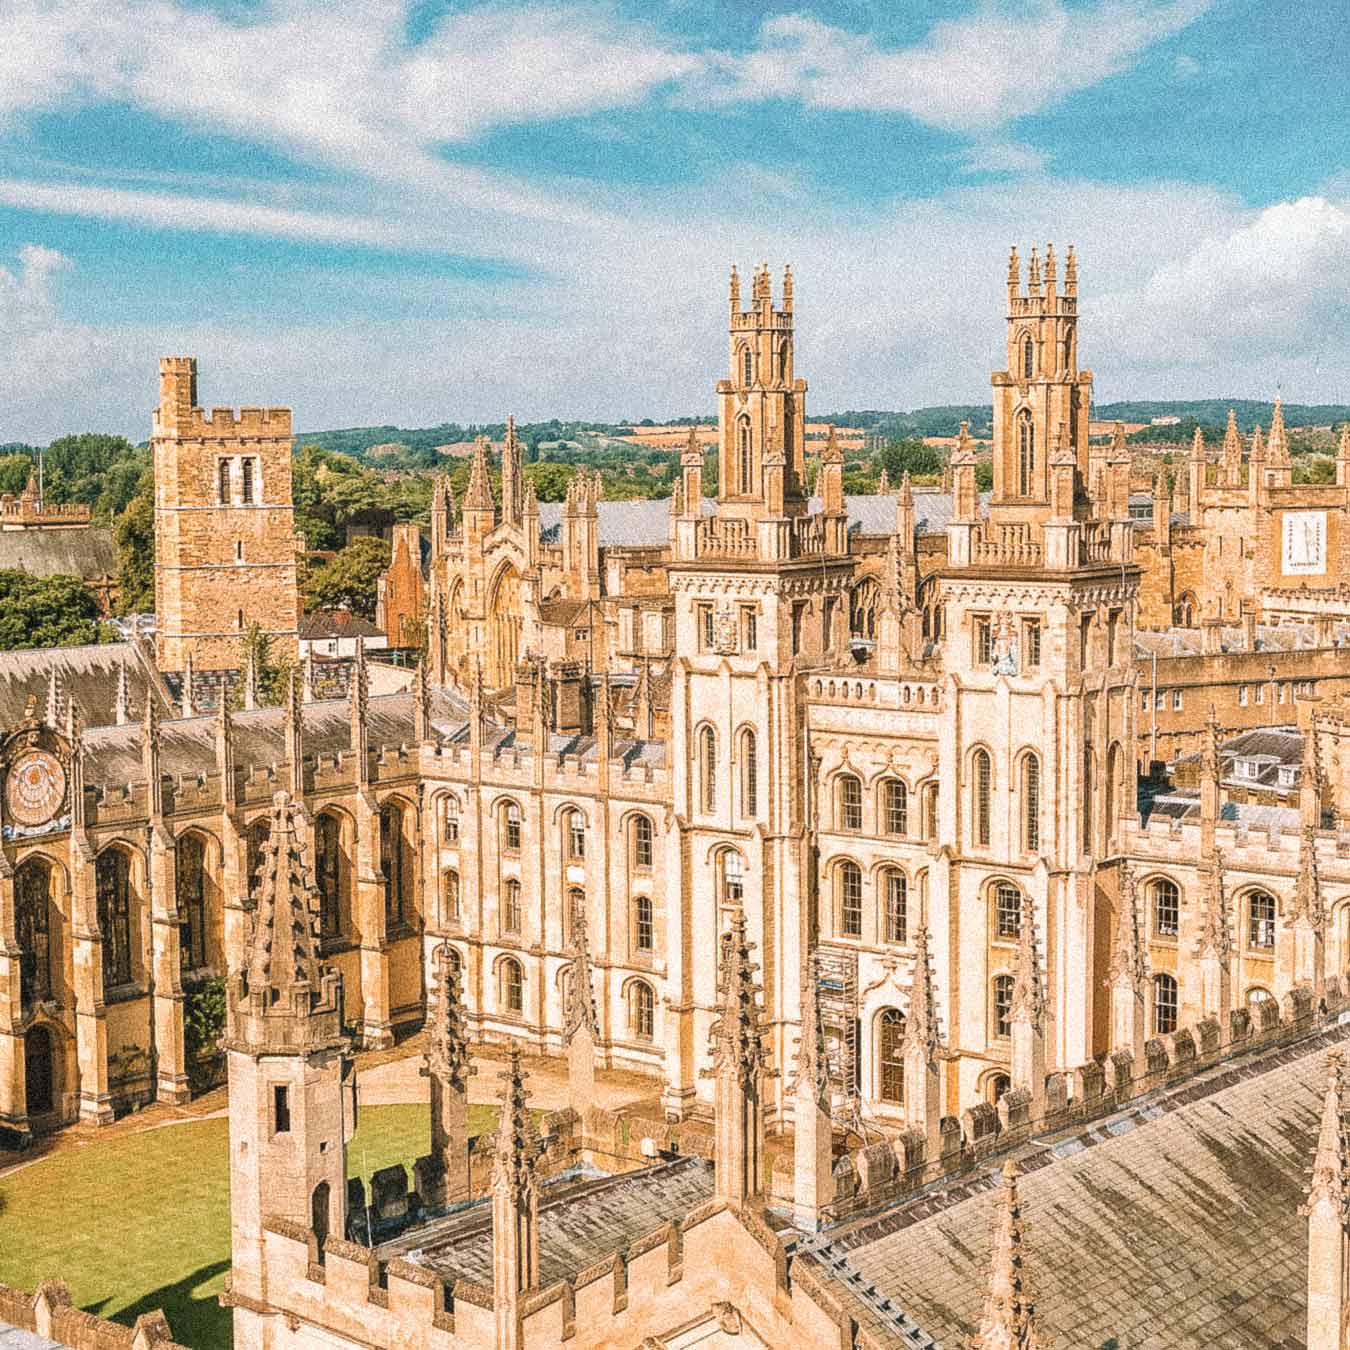 Universidade de Oxford, na Inglaterra